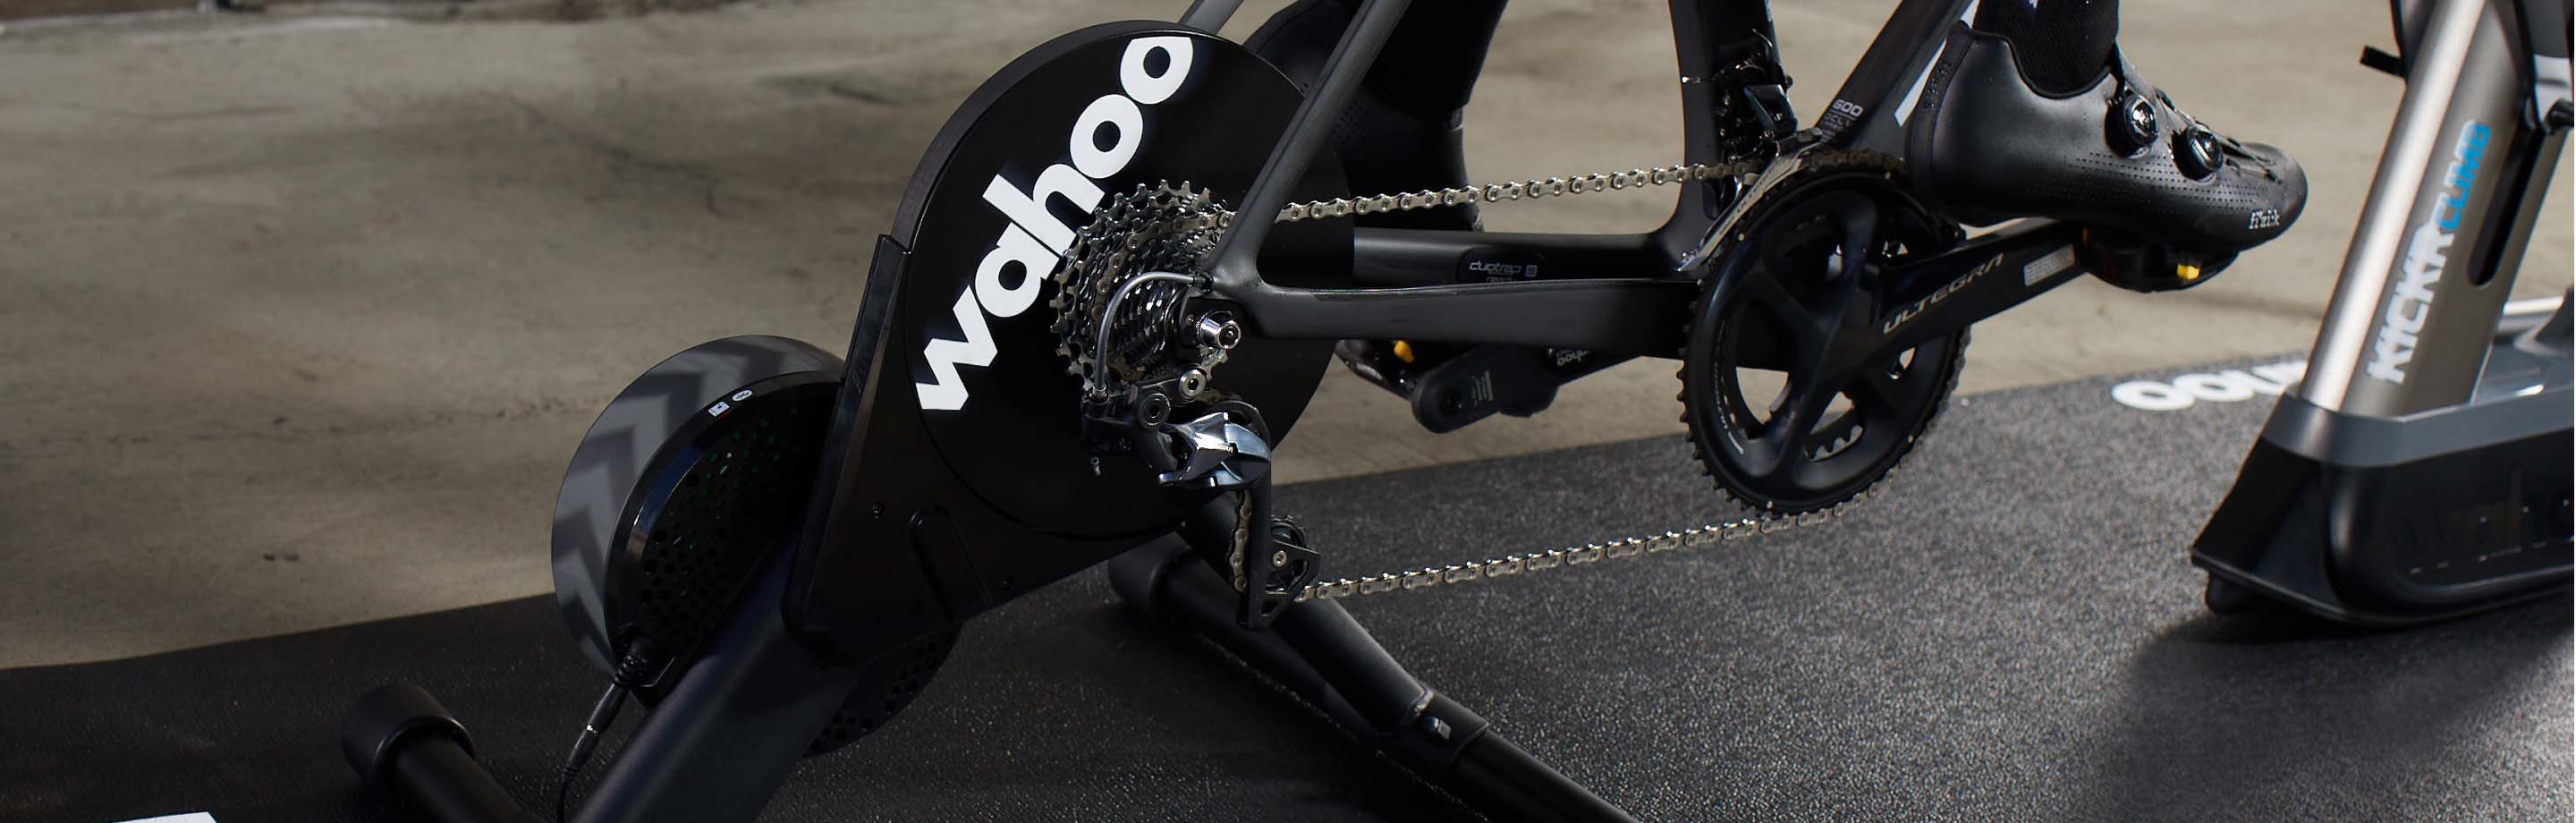 Wahoo Fitness – Cyclette intelligenti, simulatori, computer per biciclette con GPS e sensori del centro di innovazione